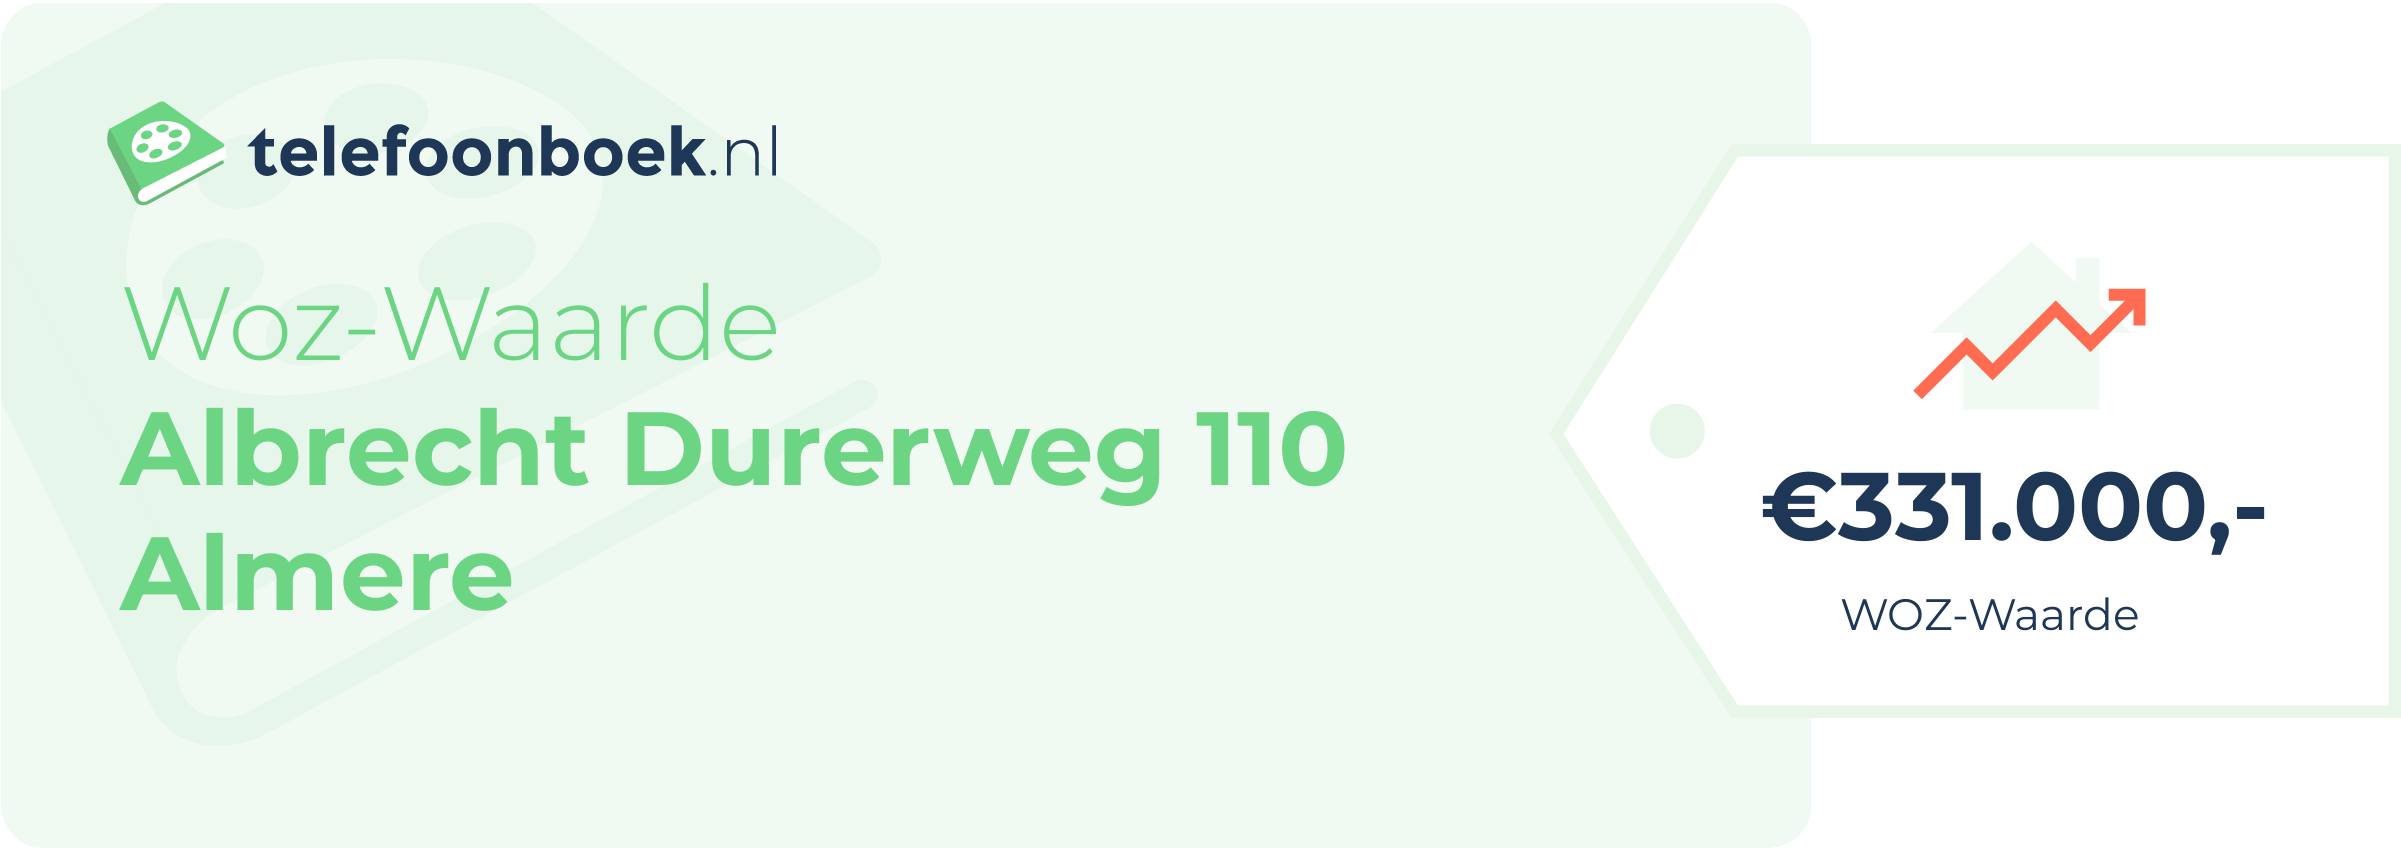 WOZ-waarde Albrecht Durerweg 110 Almere